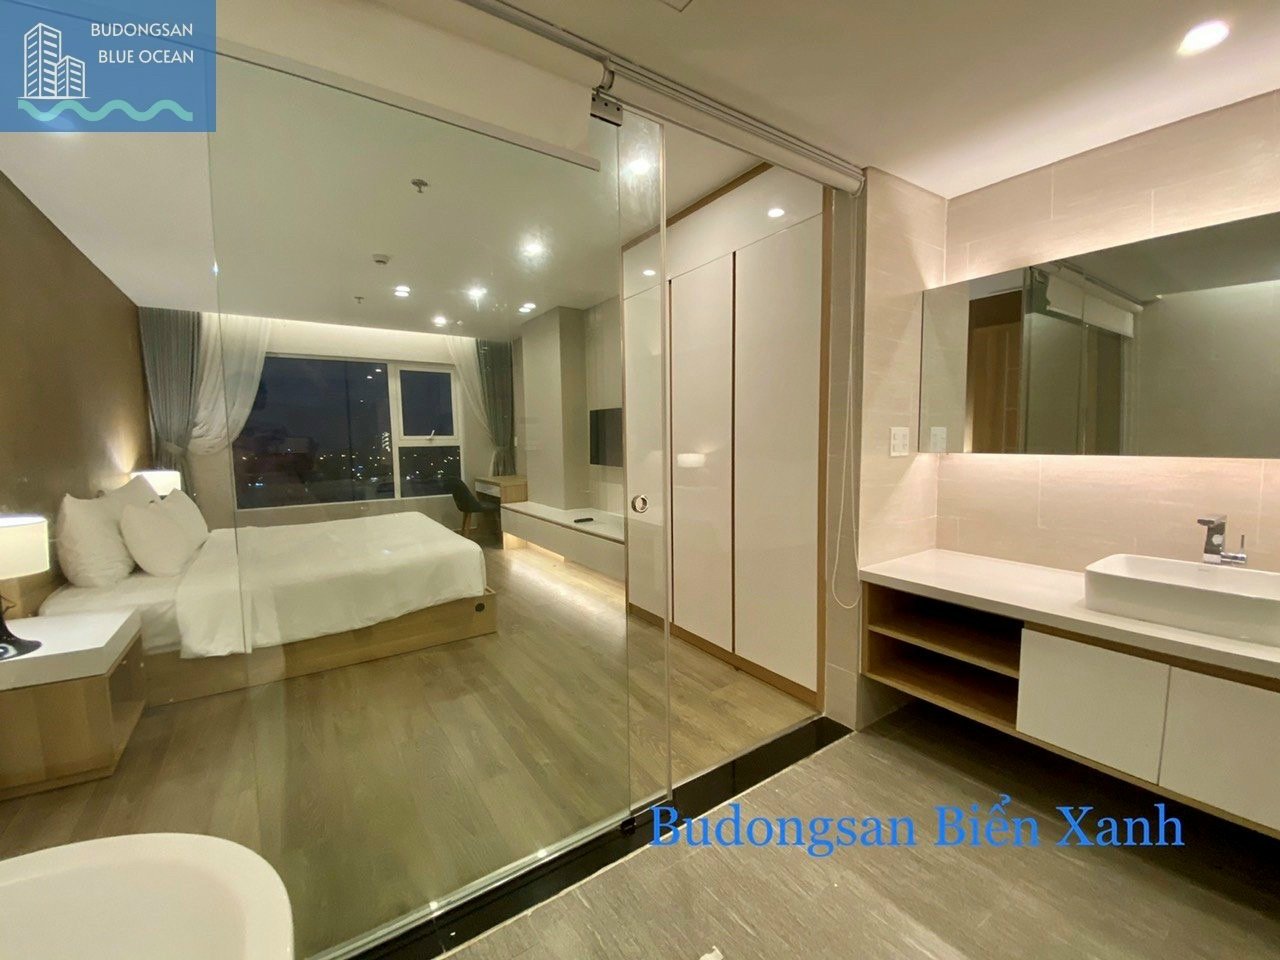 Fhome Zen 1PN cao cấp cho thuê giá chỉ 8 triệu/tháng Budongsan Biển Xanh 6